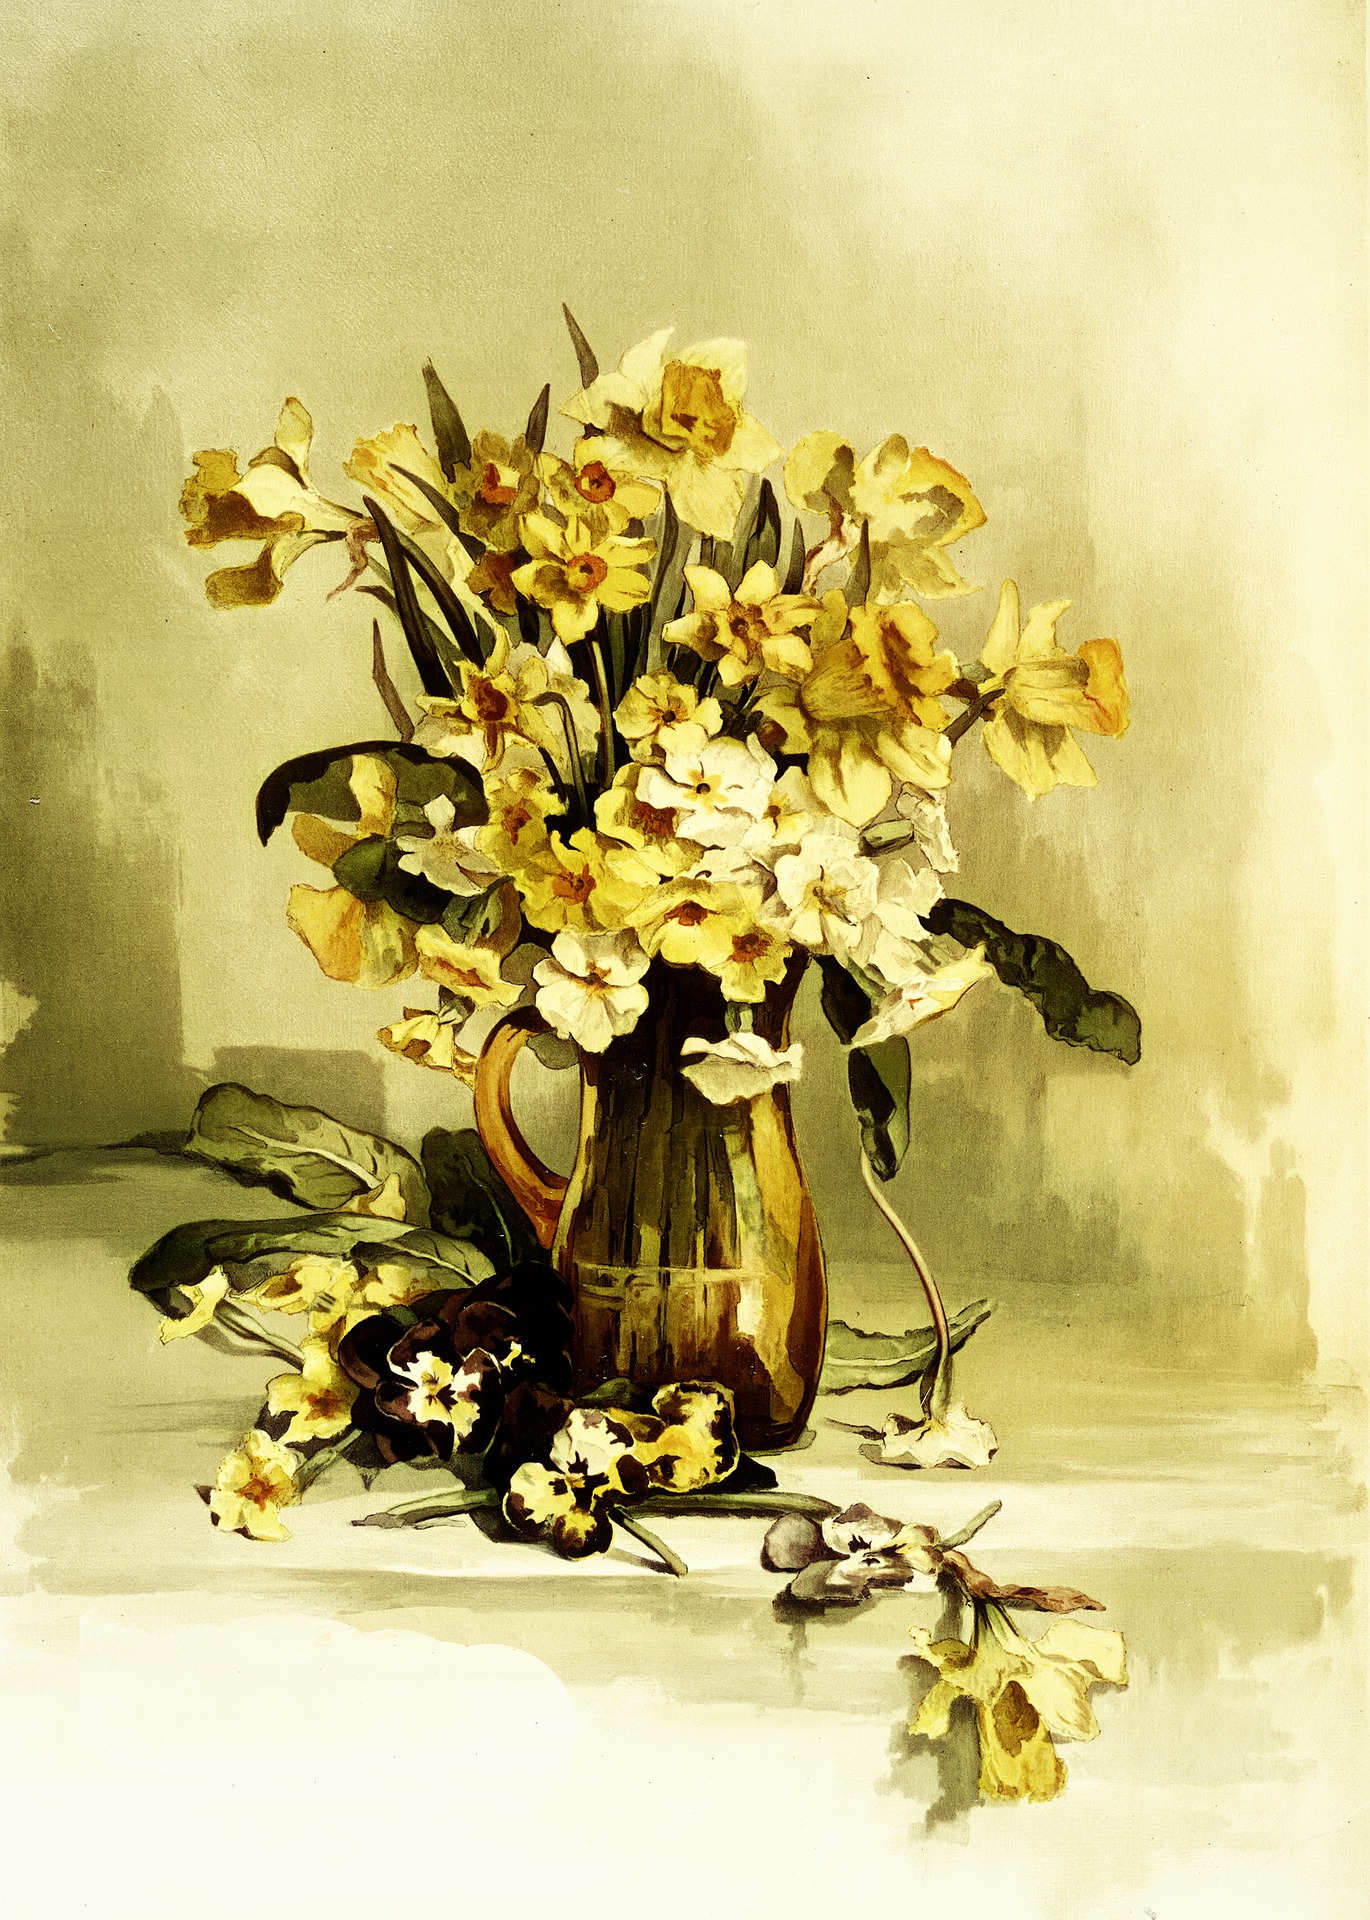 Daffodils – Ostern mit William Wordsworth (1770-1850)